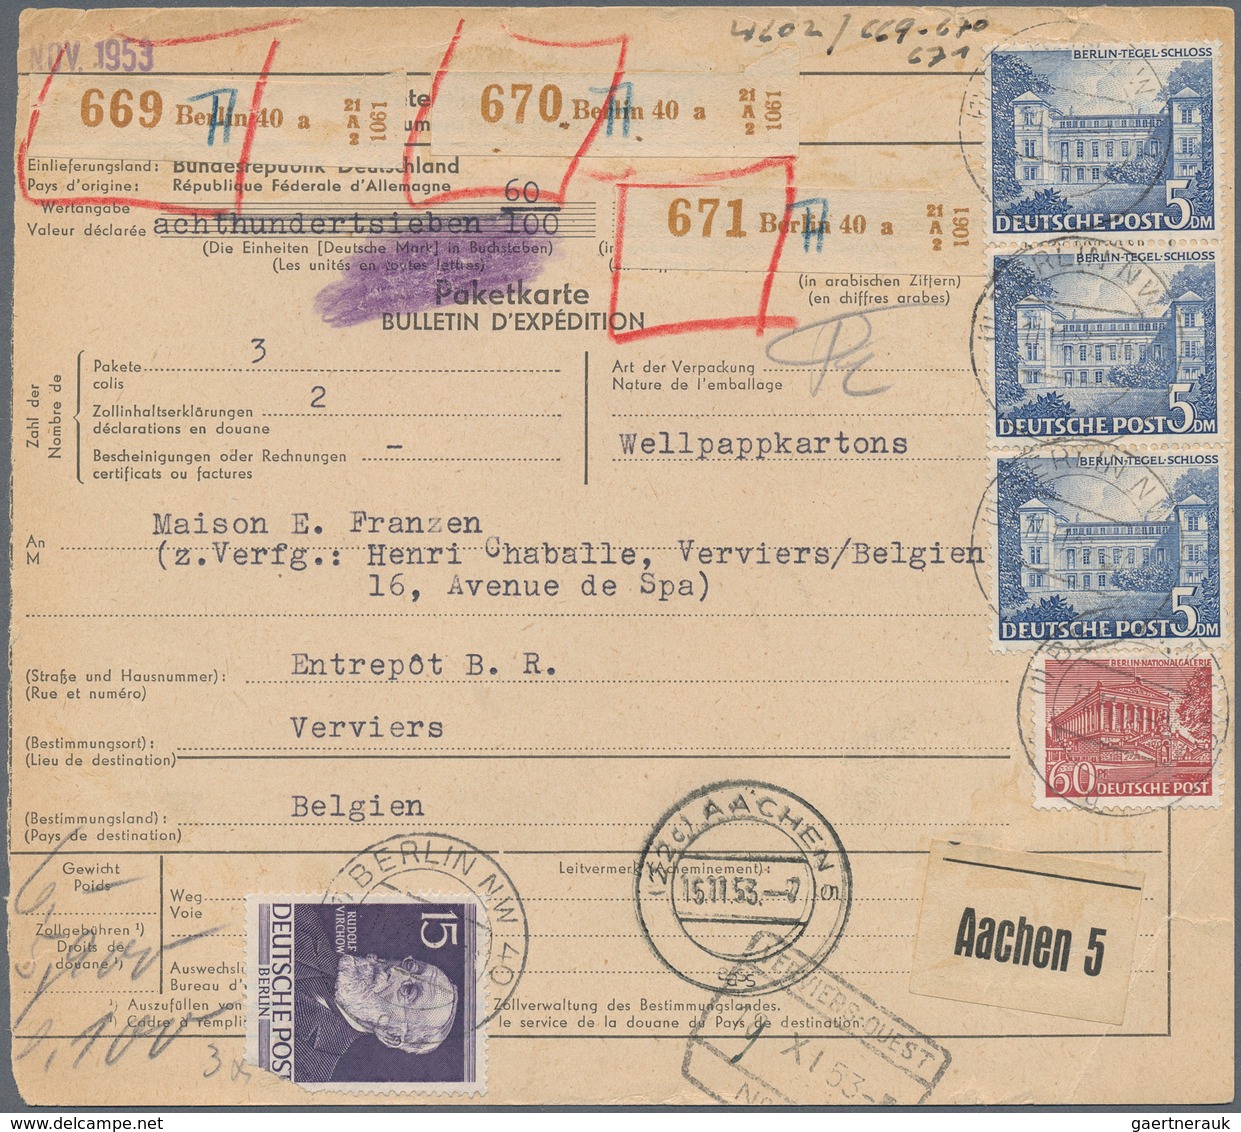 Berlin: 1953: Auslandspaketkarte, Ohne Empfängercoupon, über 3 Pakete Mit 6, 5,9 Und 6,1 Kg. Ab Berl - Covers & Documents